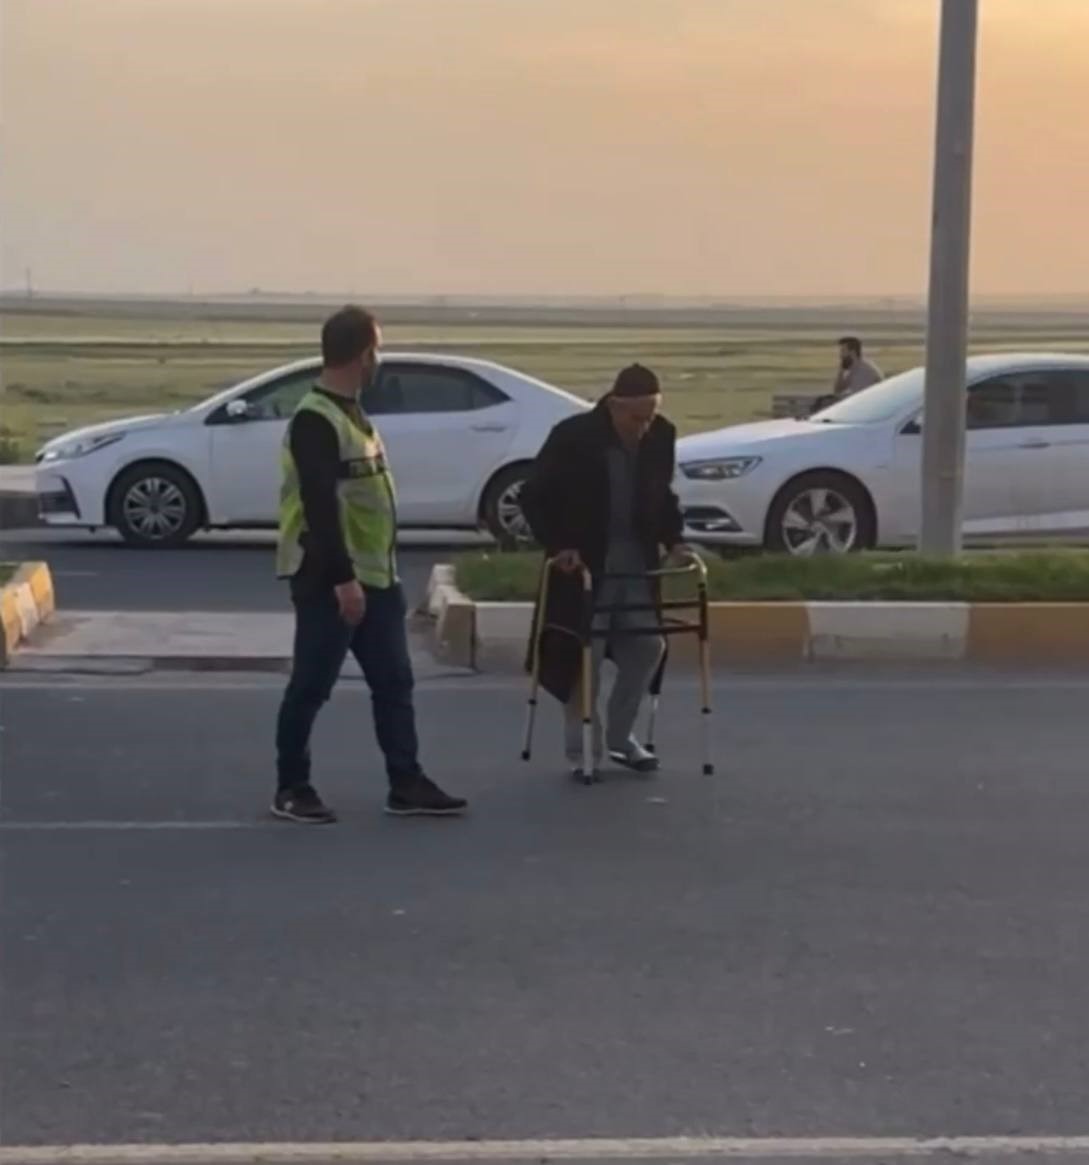 Nusaybin’de yolun karşısına geçemeyen yaşlı adama polis yardımcı oldu
